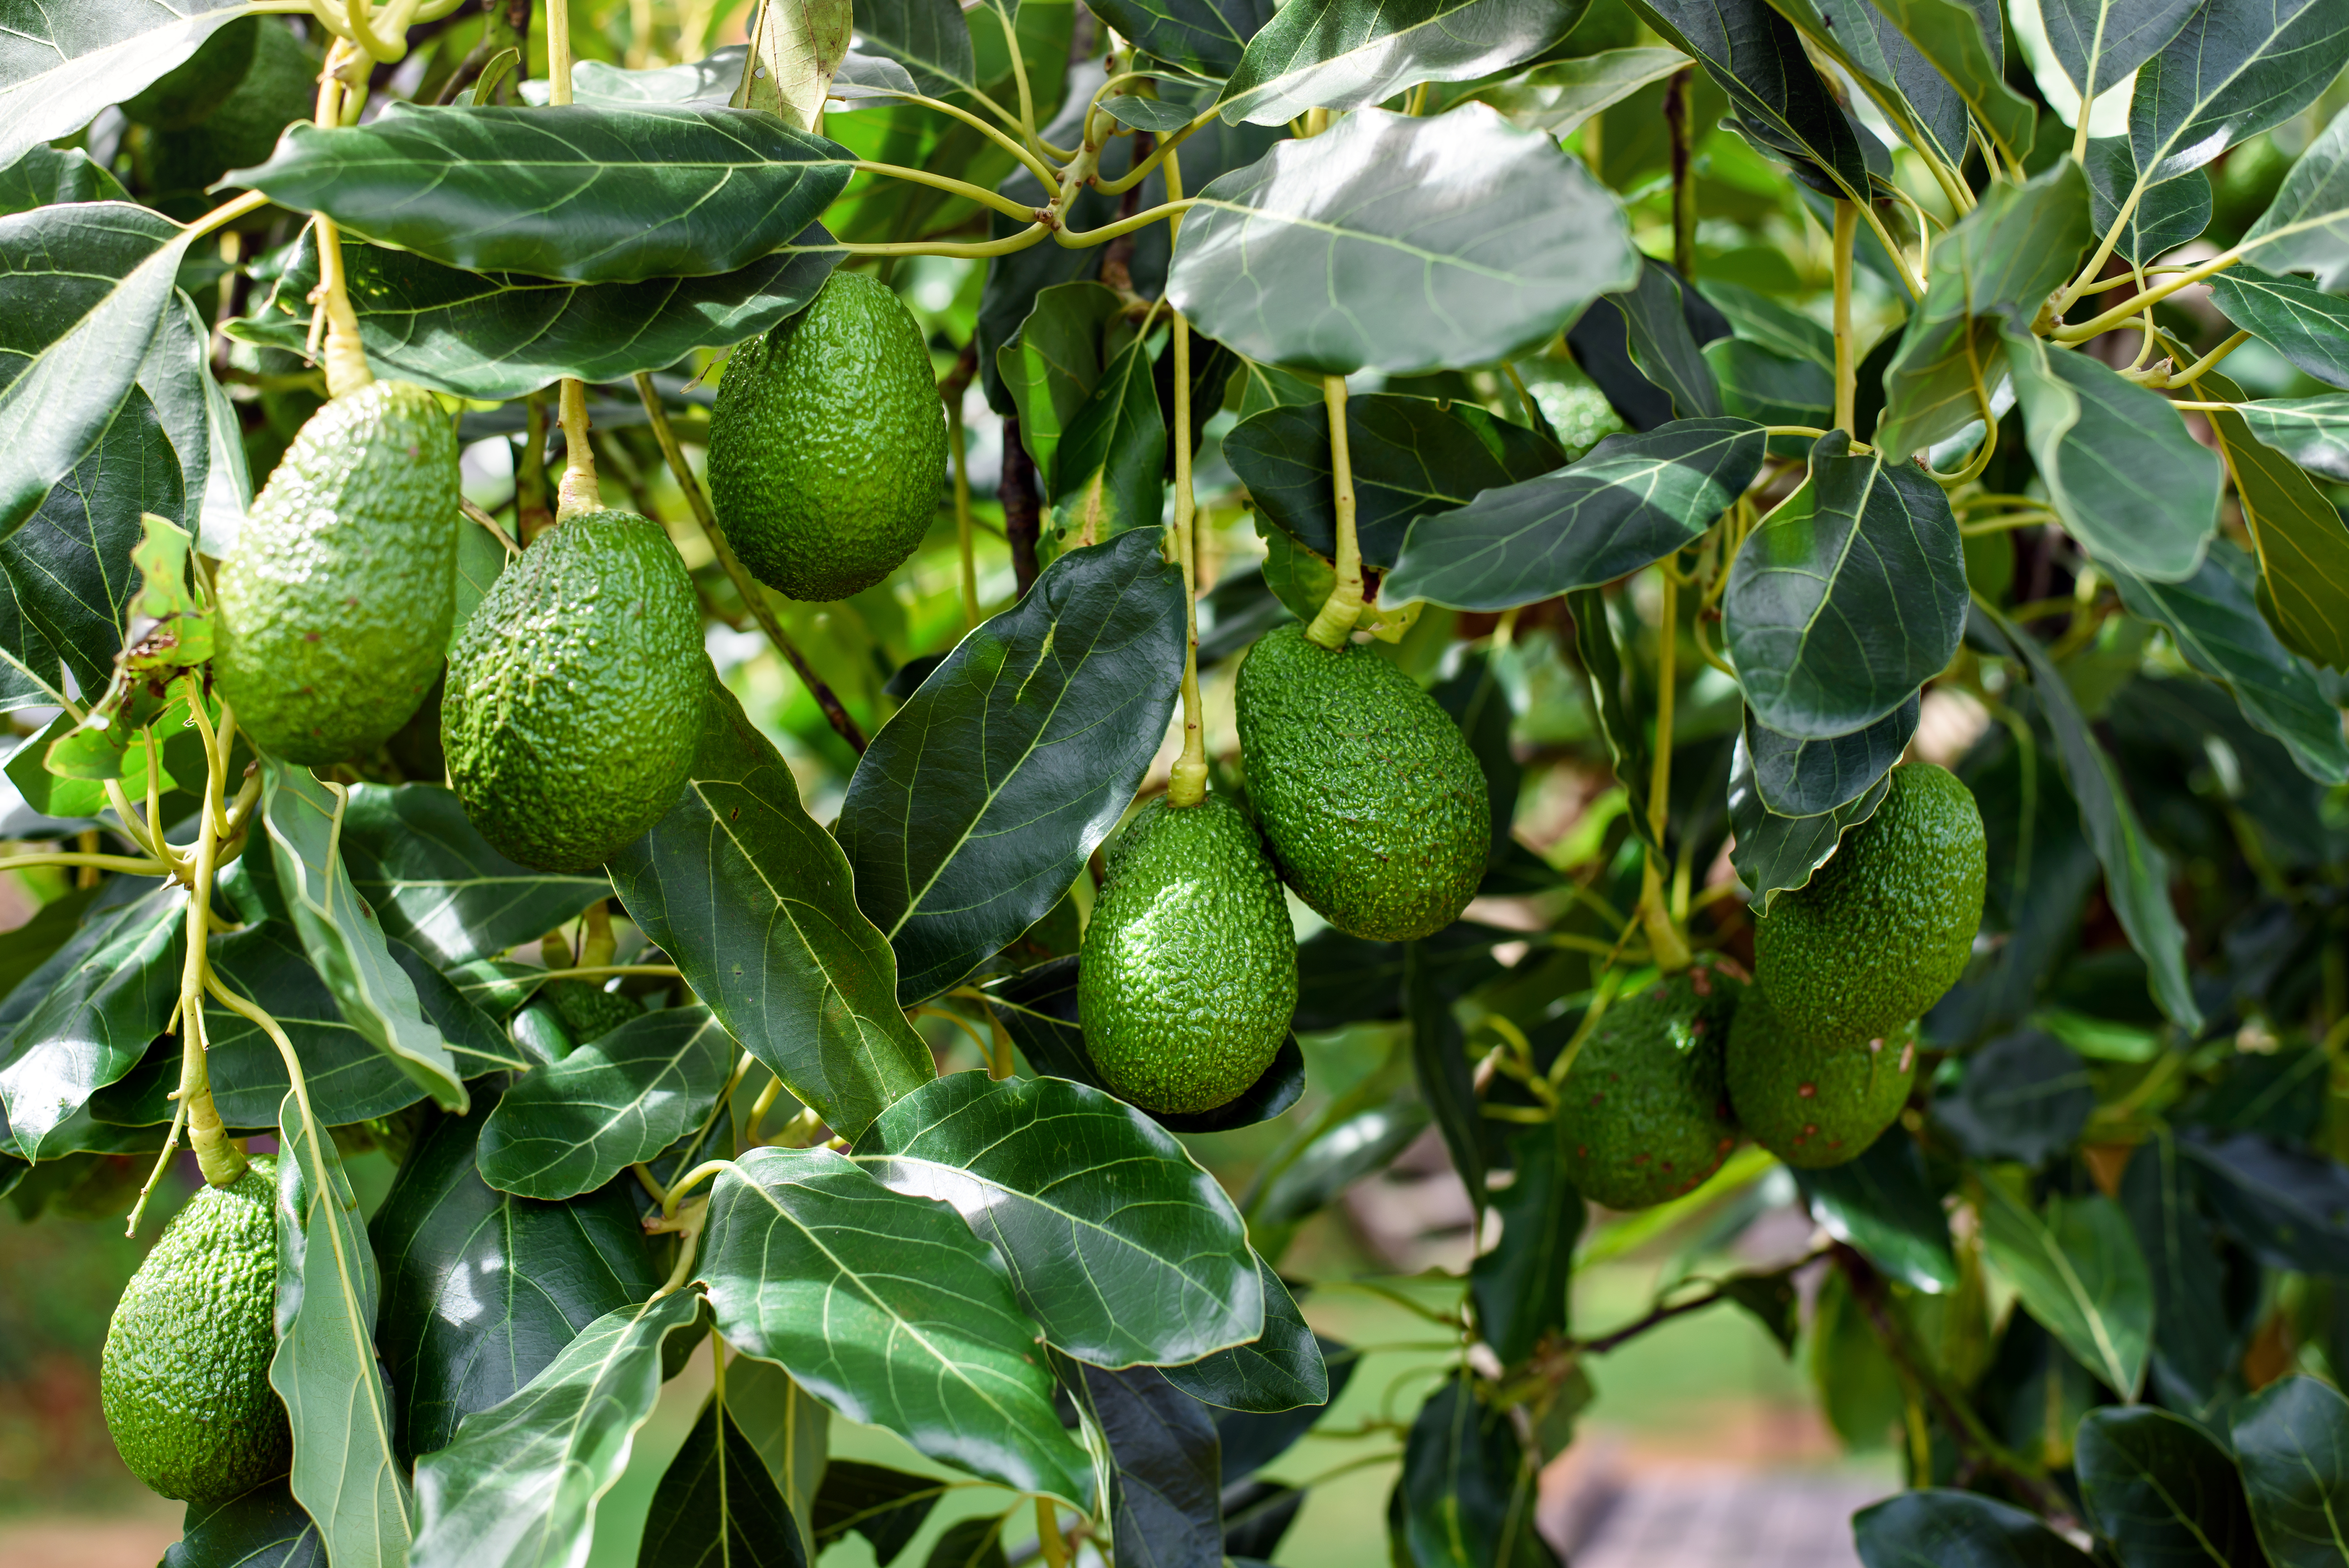 Why my avocado tree does not bear fruit